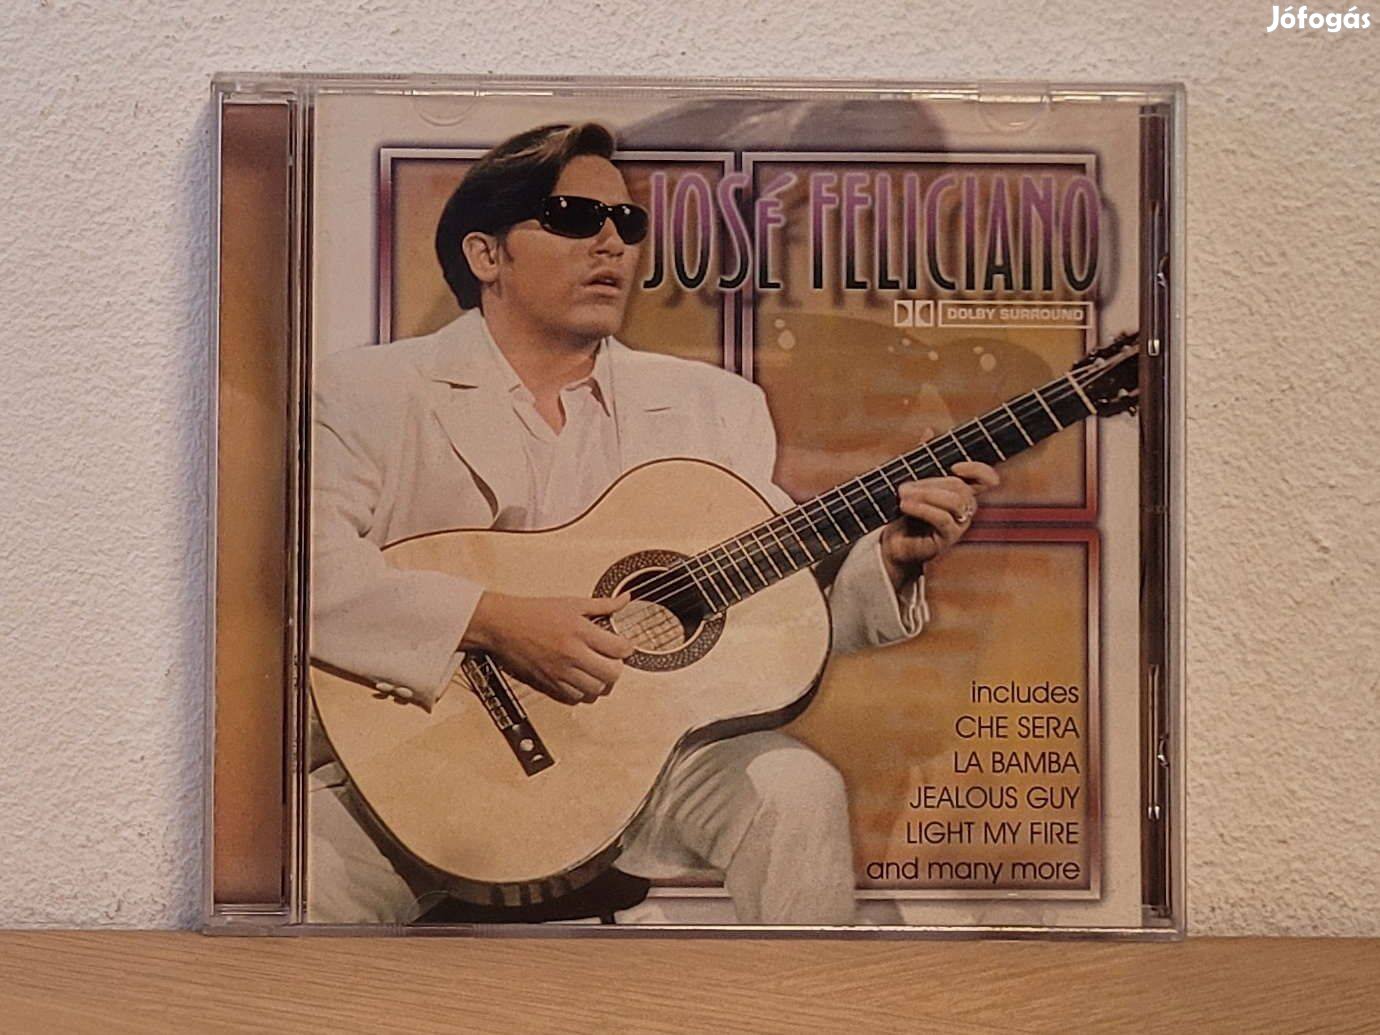 José Feliciano - José Feliciano CD eladó